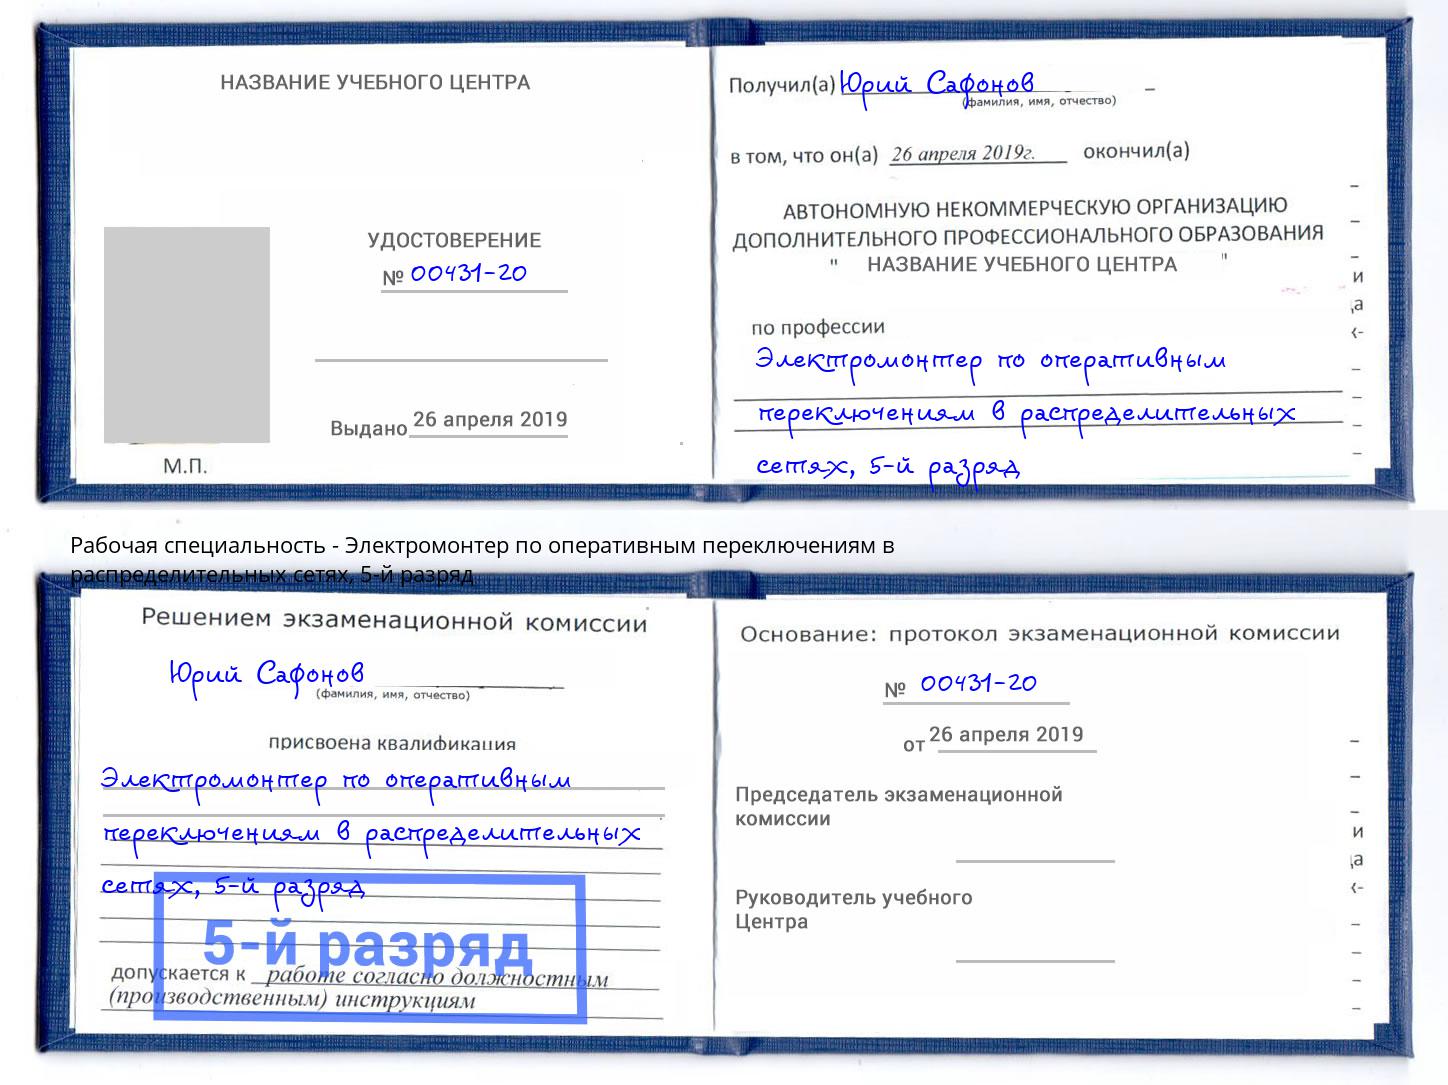 корочка 5-й разряд Электромонтер по оперативным переключениям в распределительных сетях Южно-Сахалинск